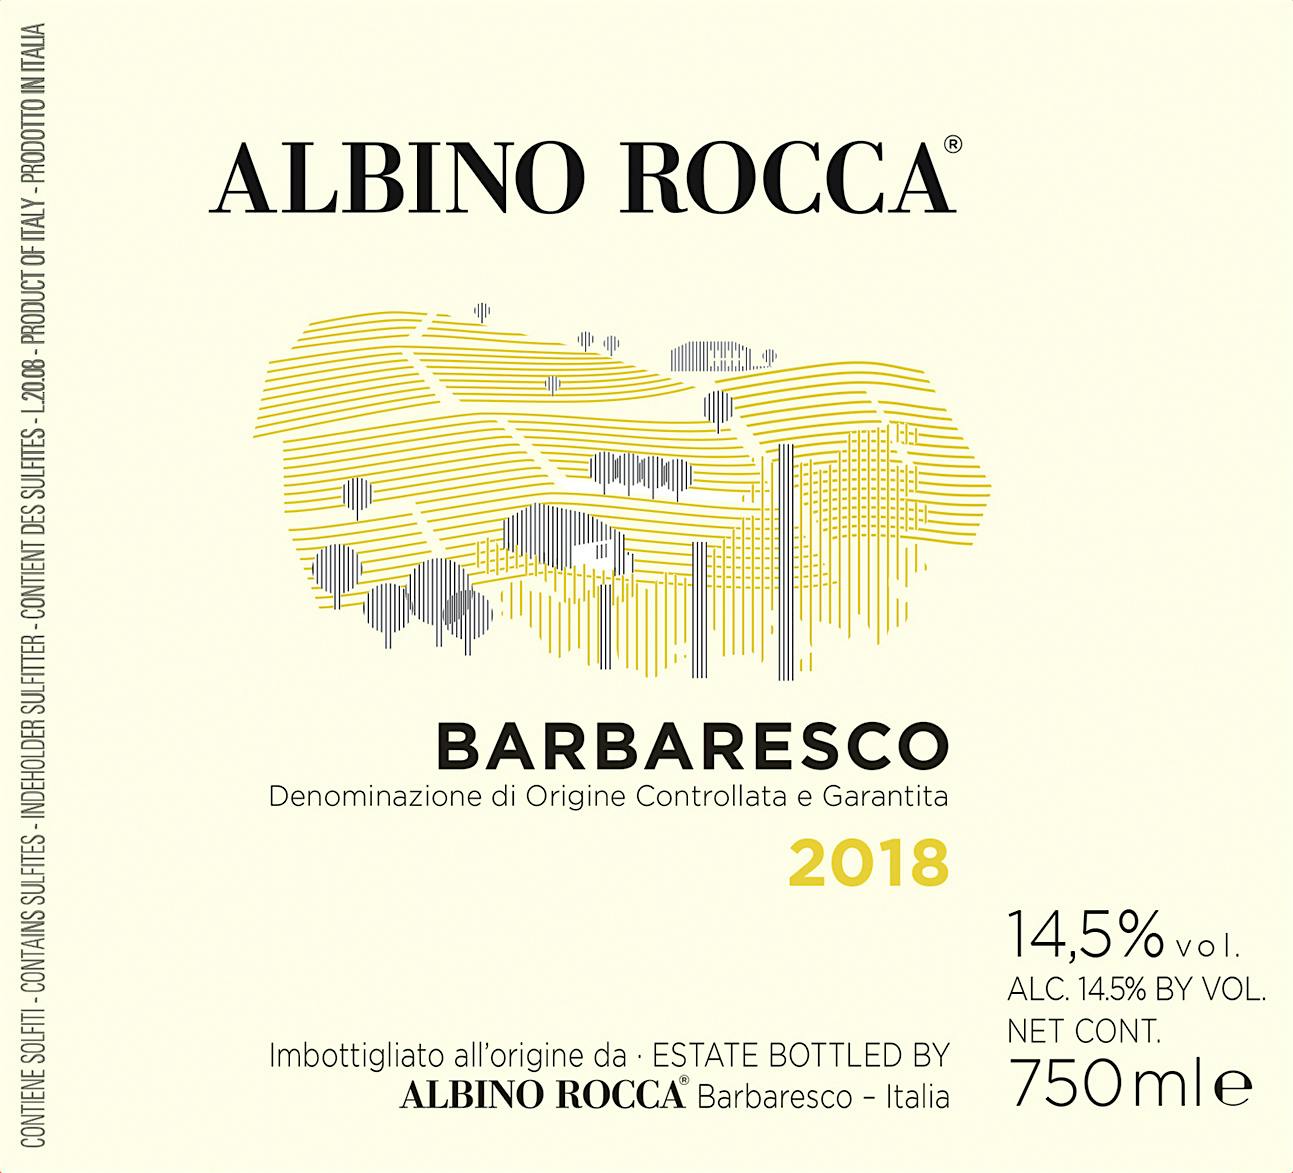 Label for Albino Rocca